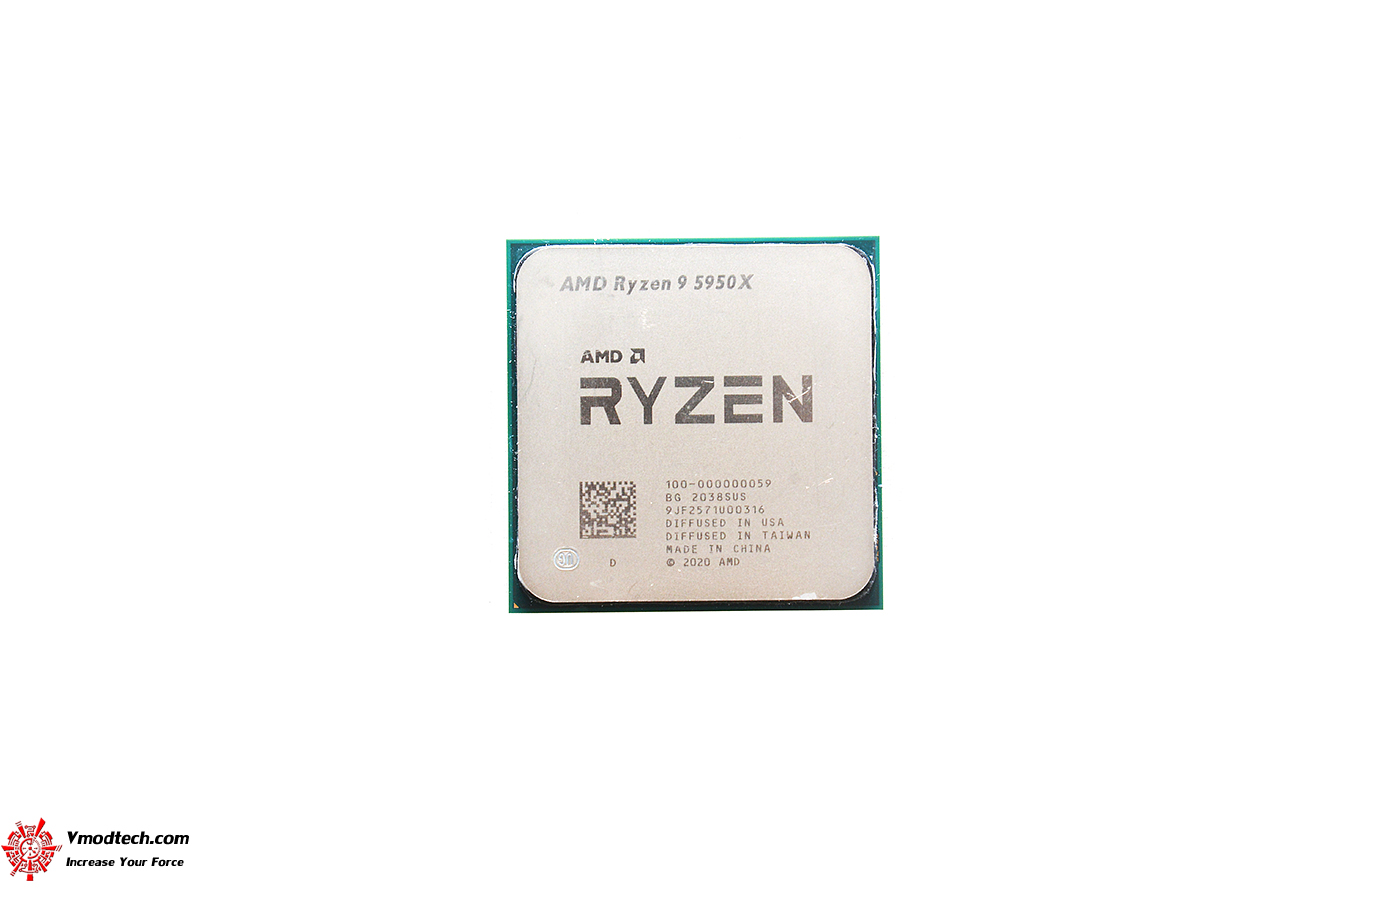 dsc 9905 AMD RYZEN 9 5950X PROCESSOR REVIEW